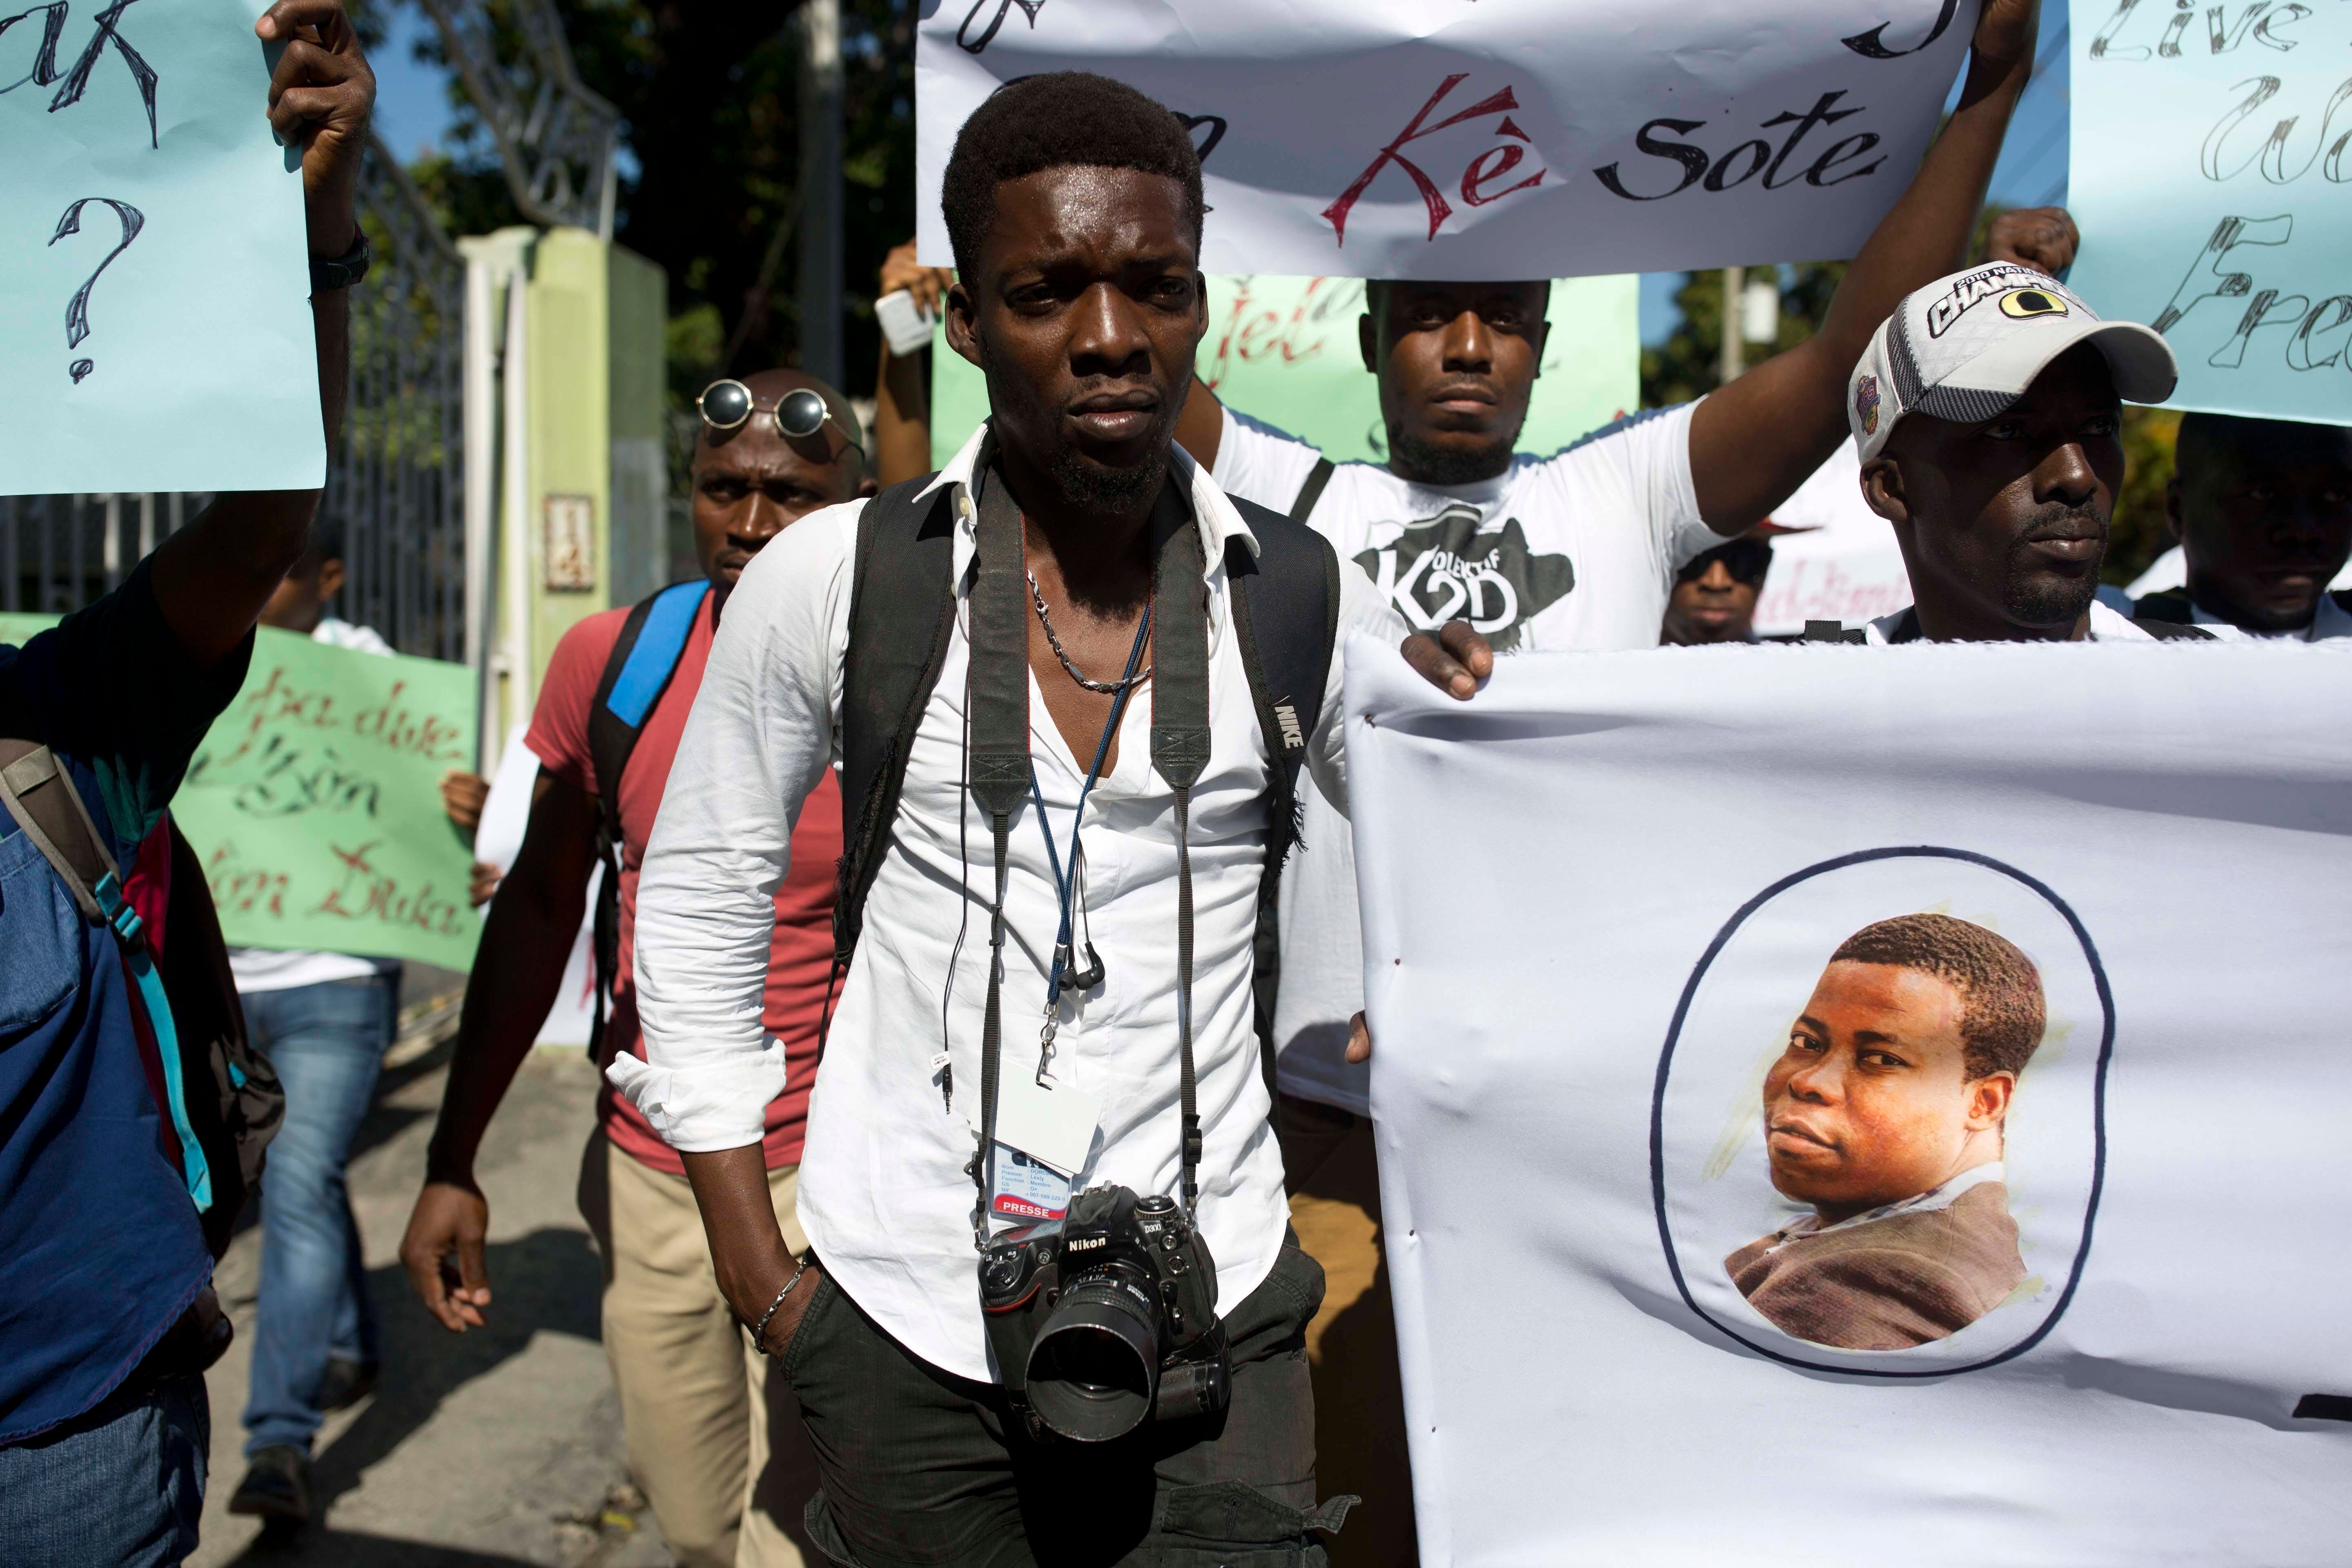 Grupo periodístico caribeño exige a Haití encontrar a fotógrafo desaparecido